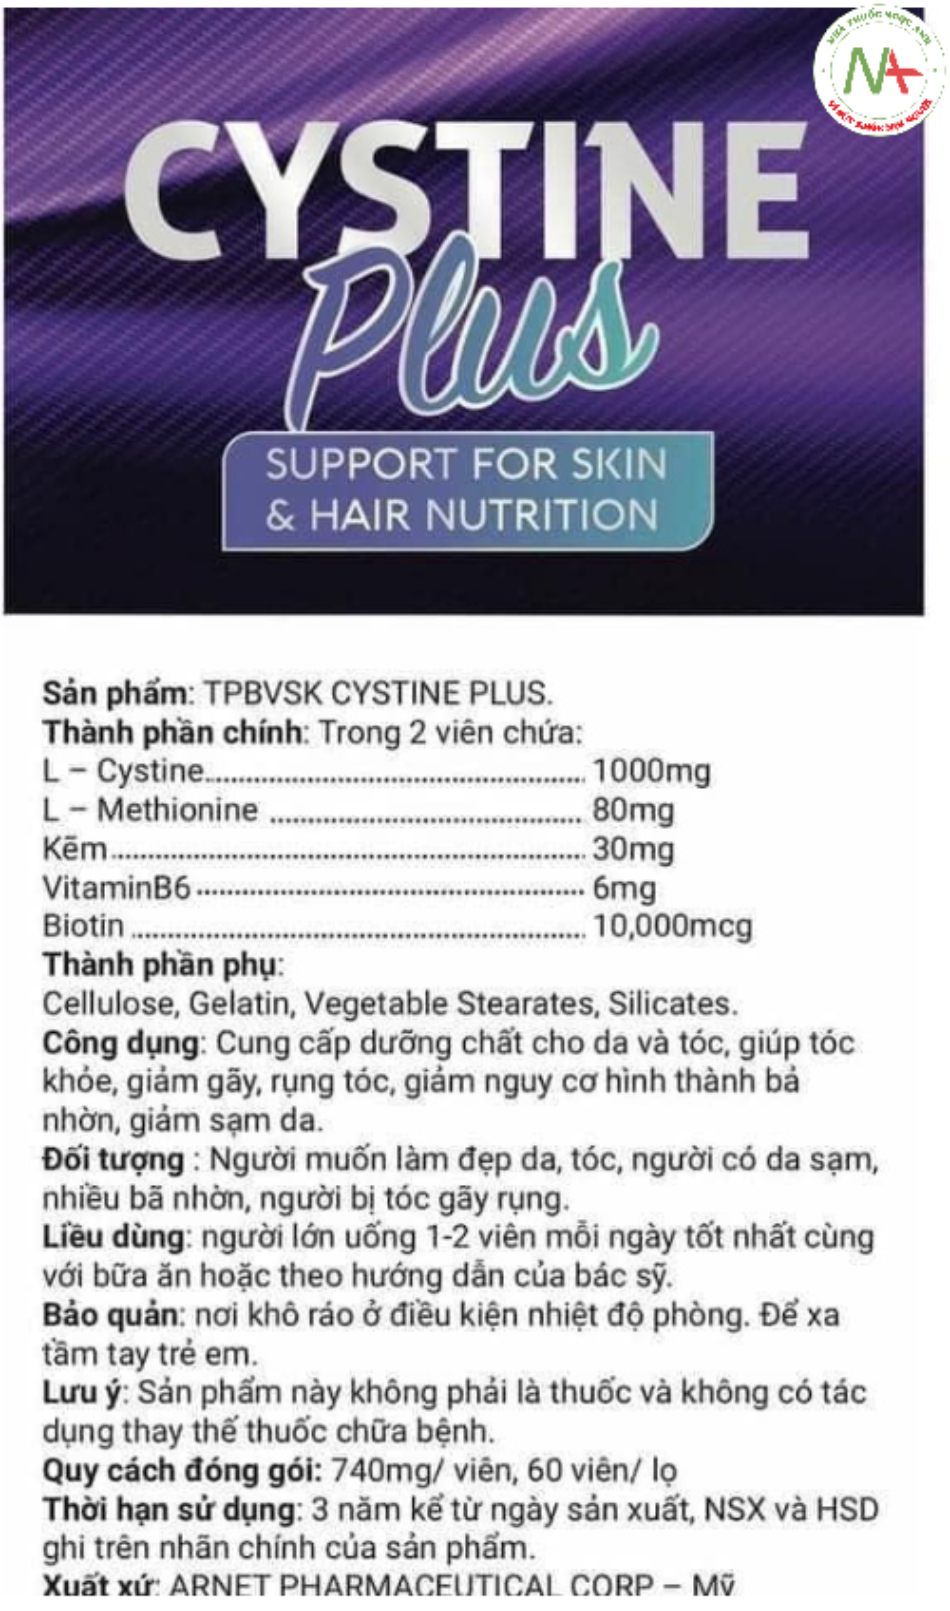 Tờ hướng dẫn sử dụng Cystine Plus